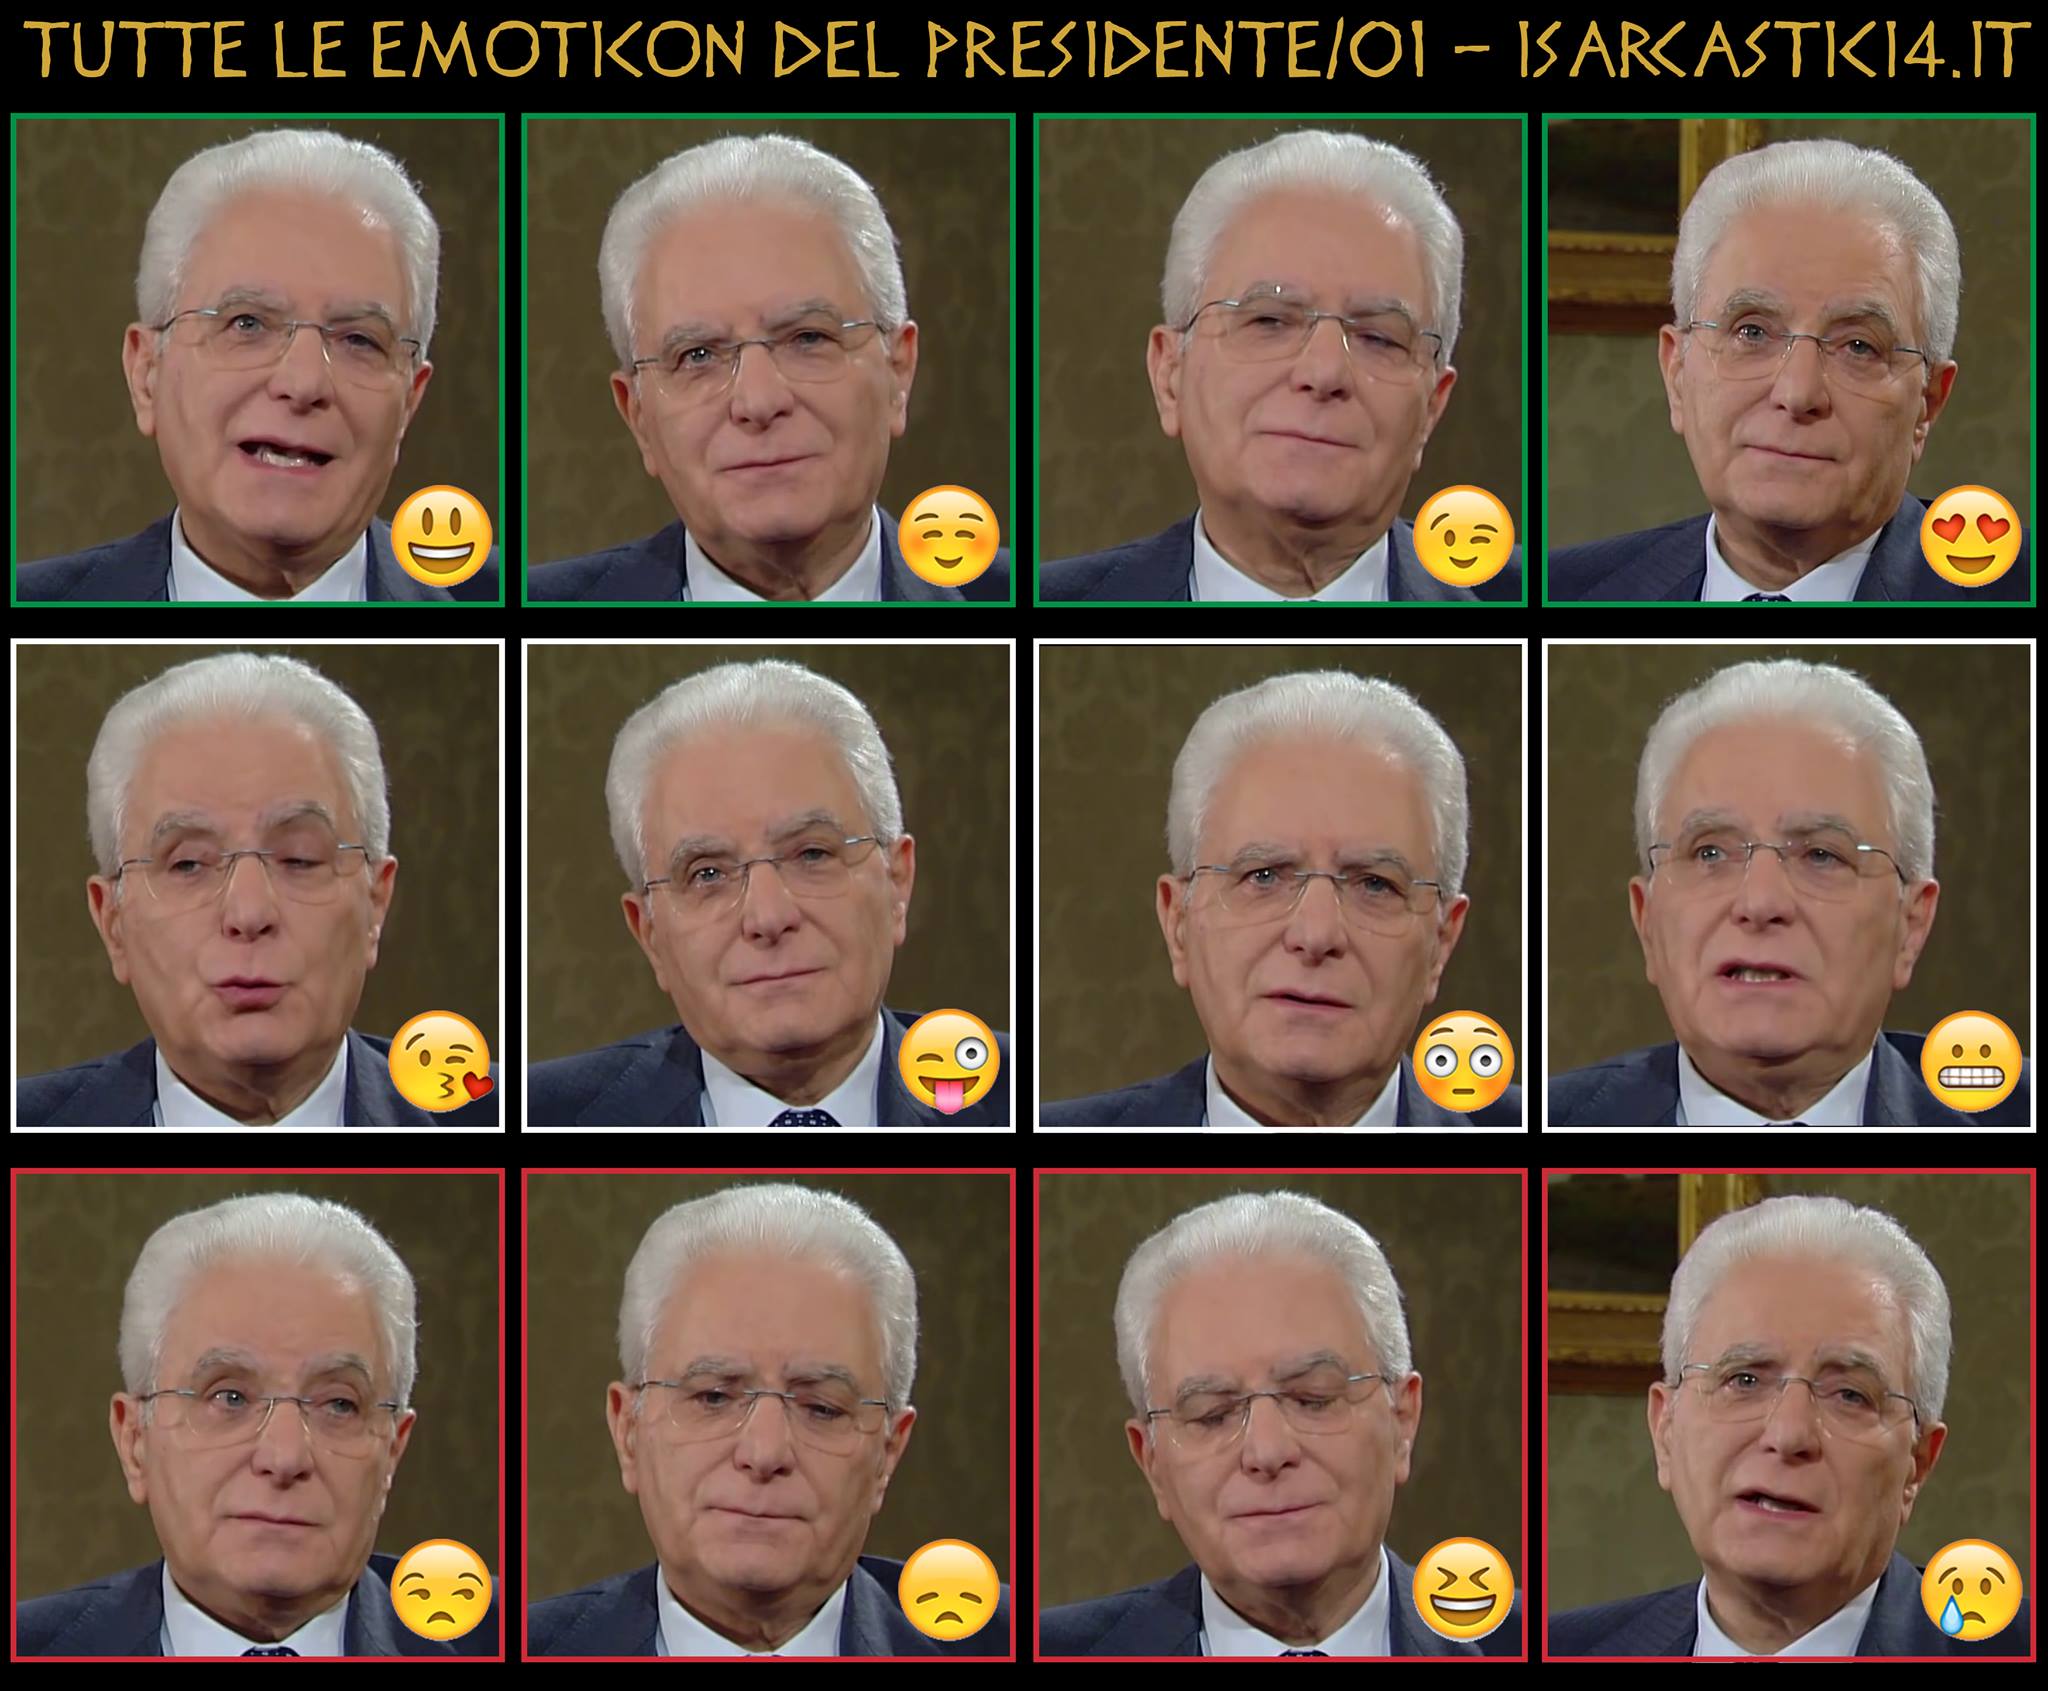 Tutte le emoticon del Presidente della Repubblica Mattarella - 01